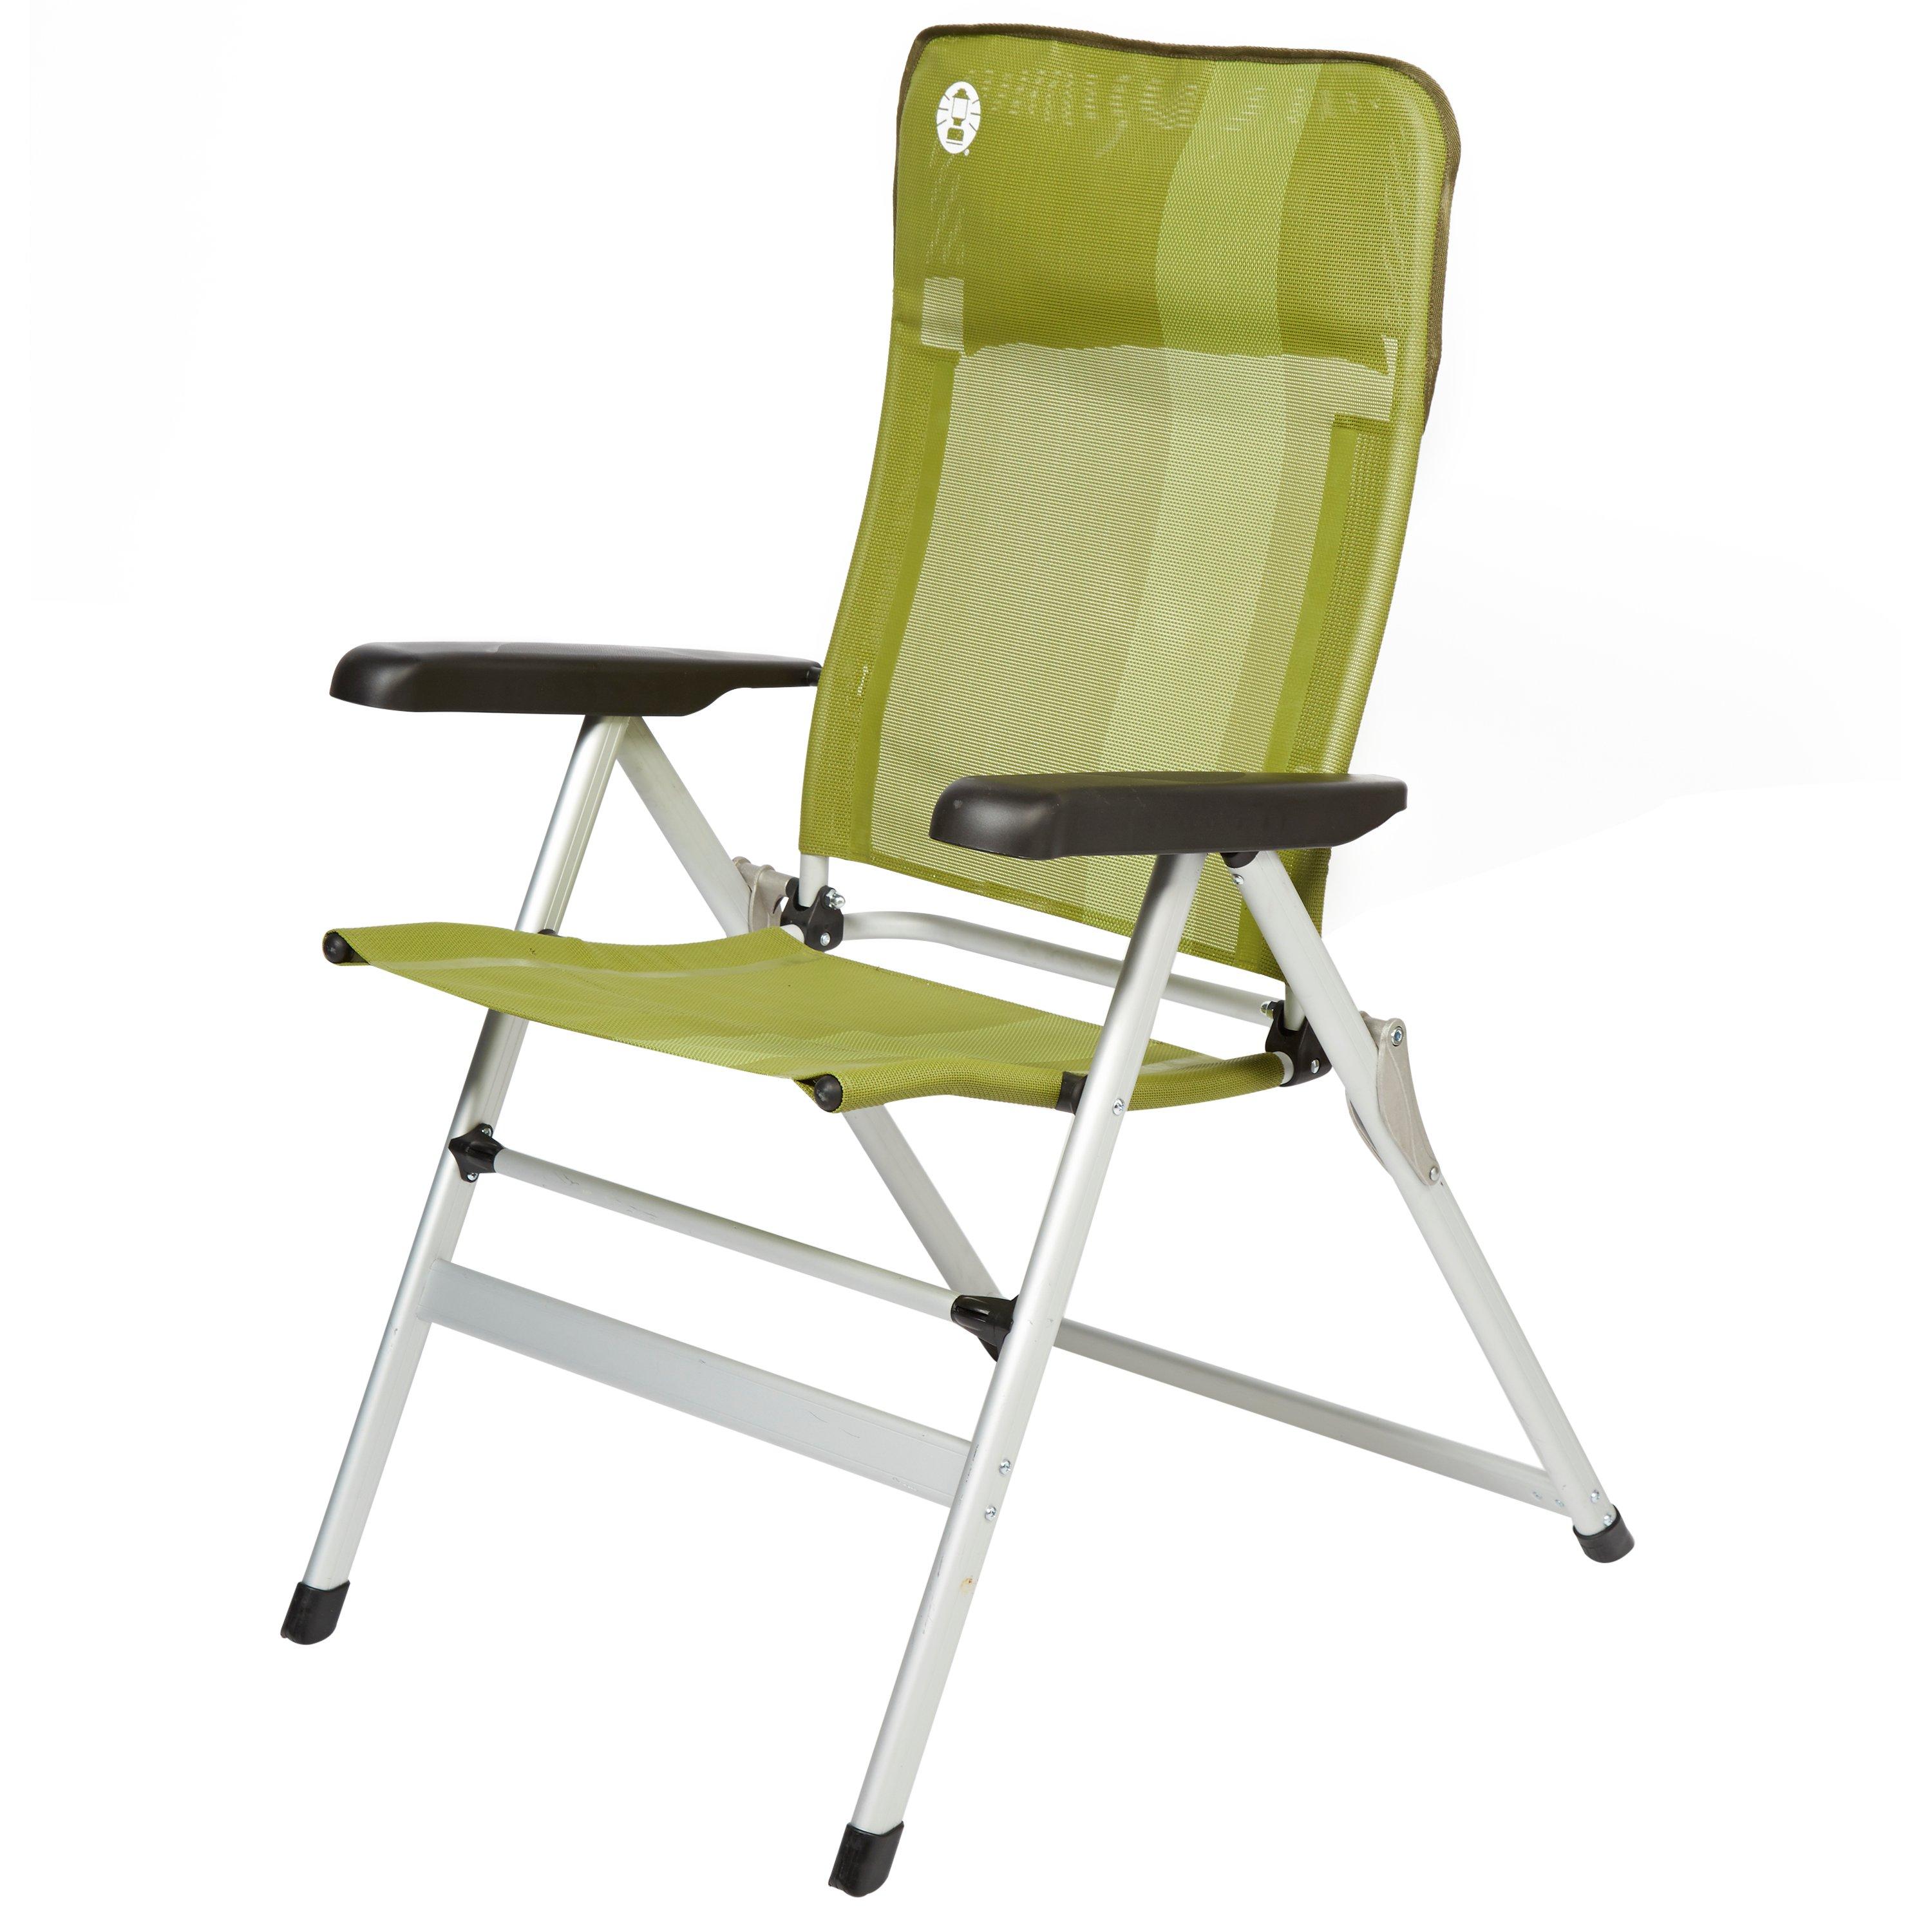 COLEMAN Recliner Chair - Green | eBay